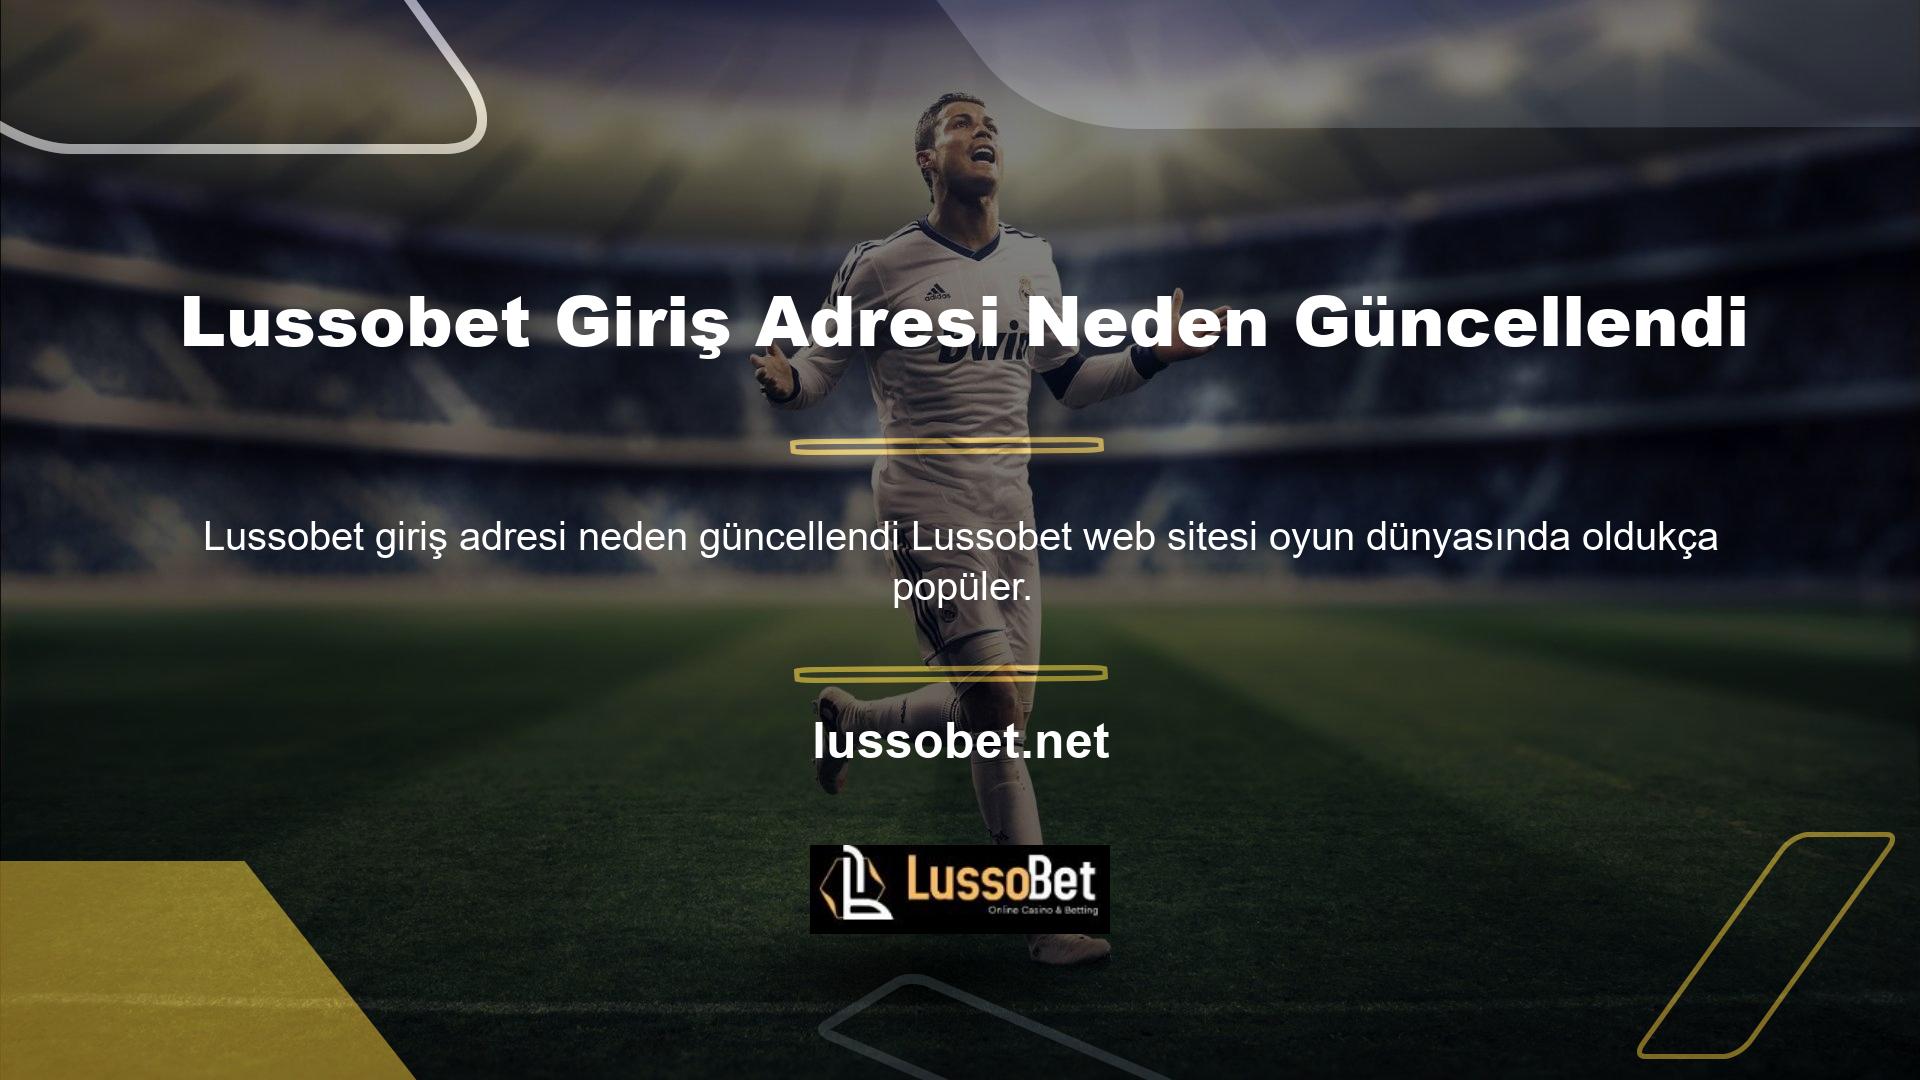 Bu web sitesini kullanmak için öncelikle Lussobet web sitesini ziyaret etmelisiniz